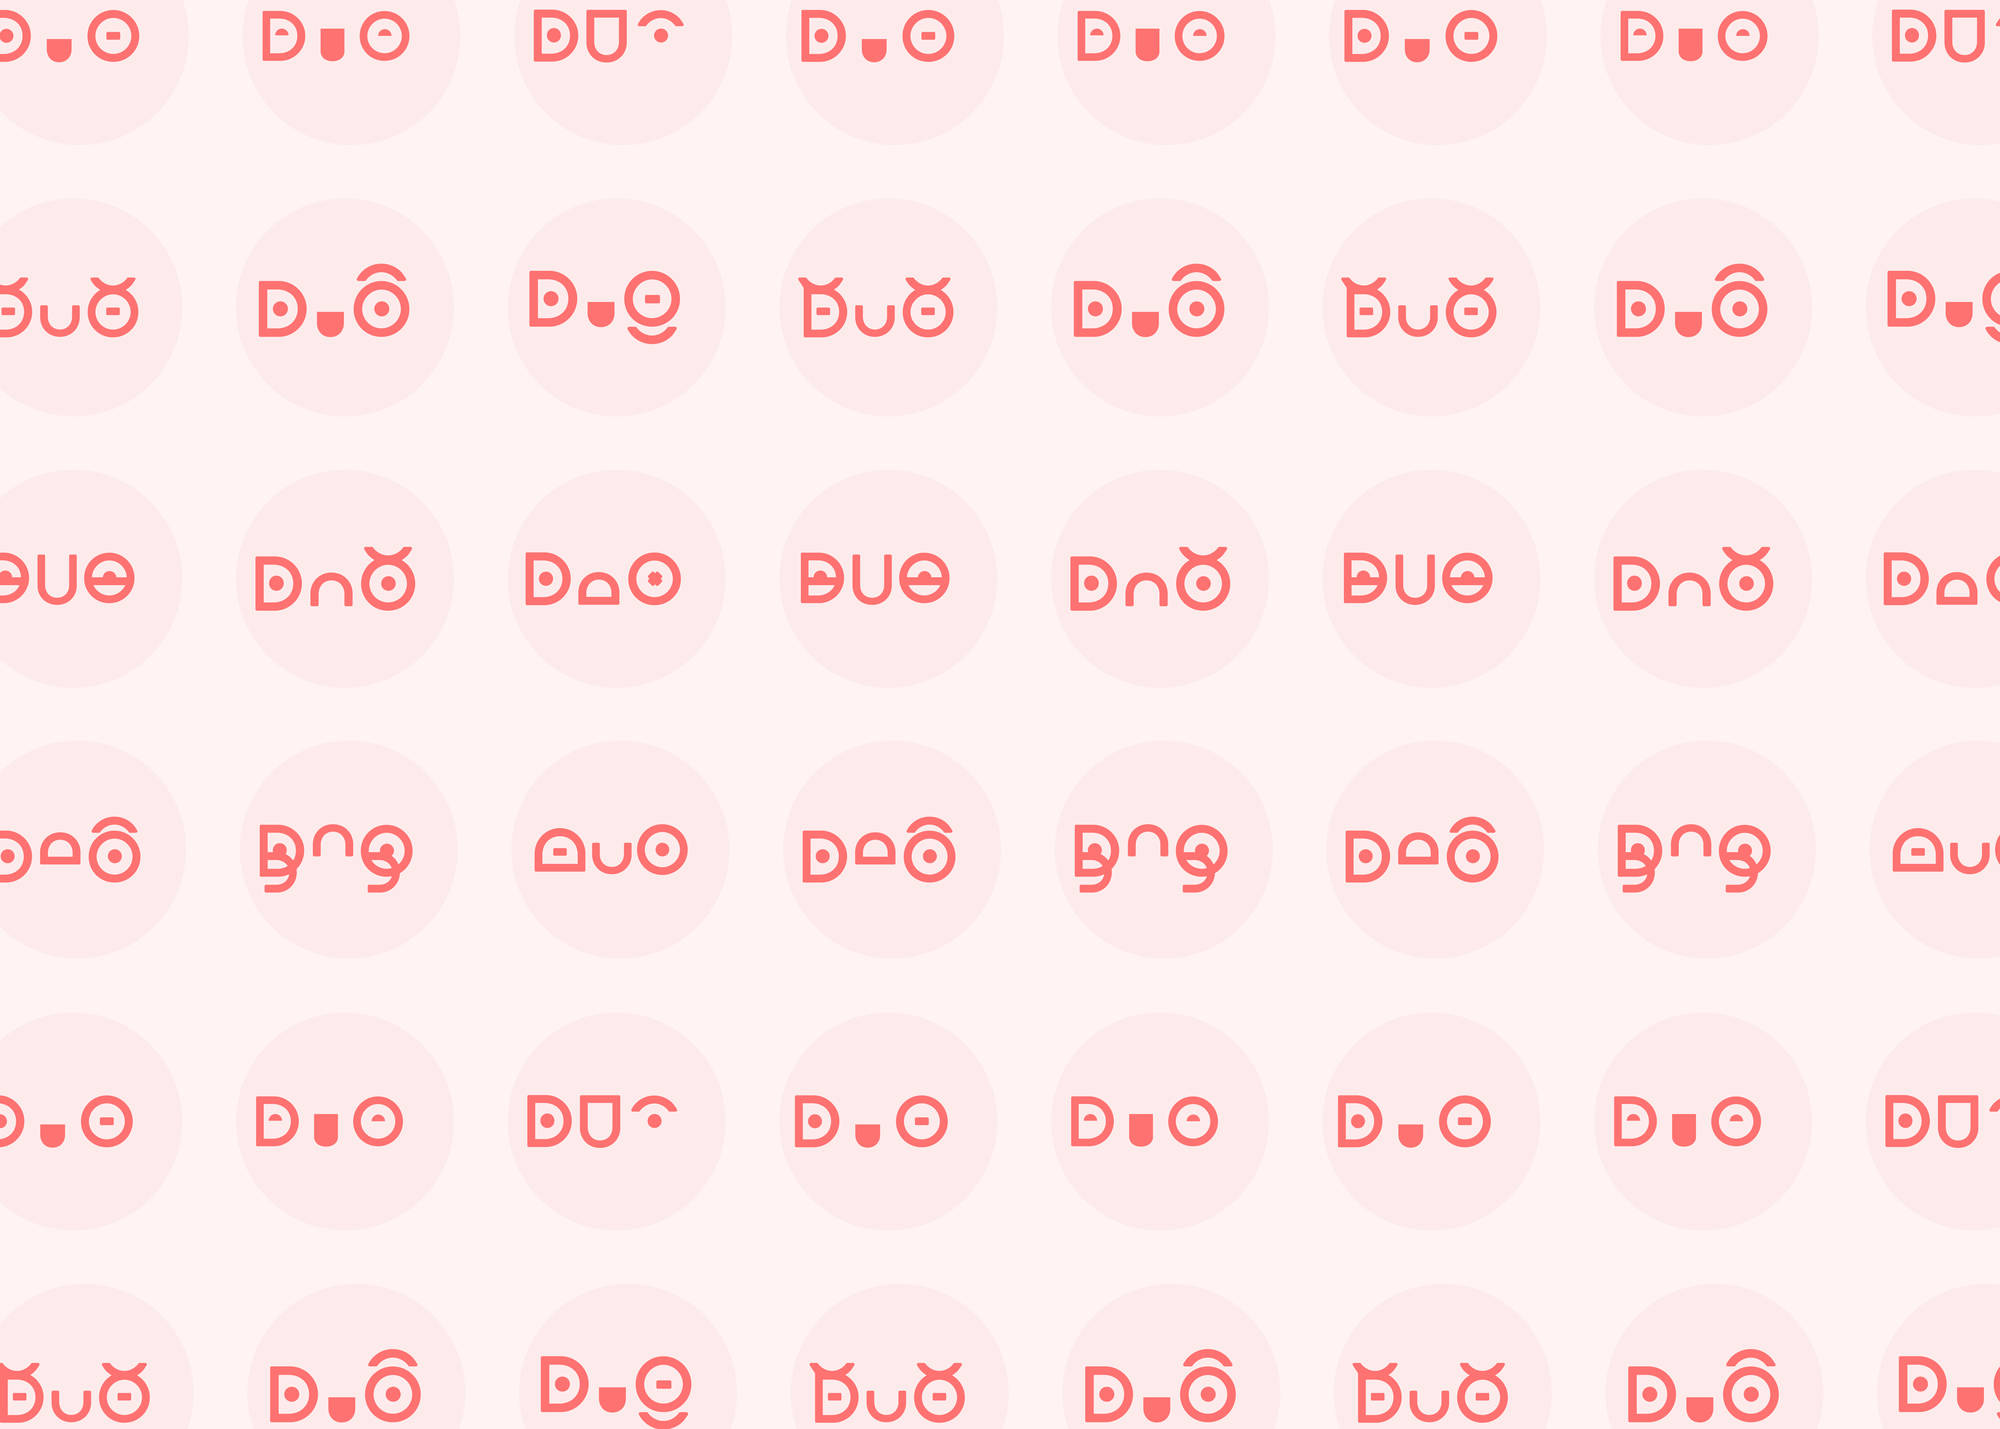 Pattern ricavato dal logo del progetto "DuoDuo"